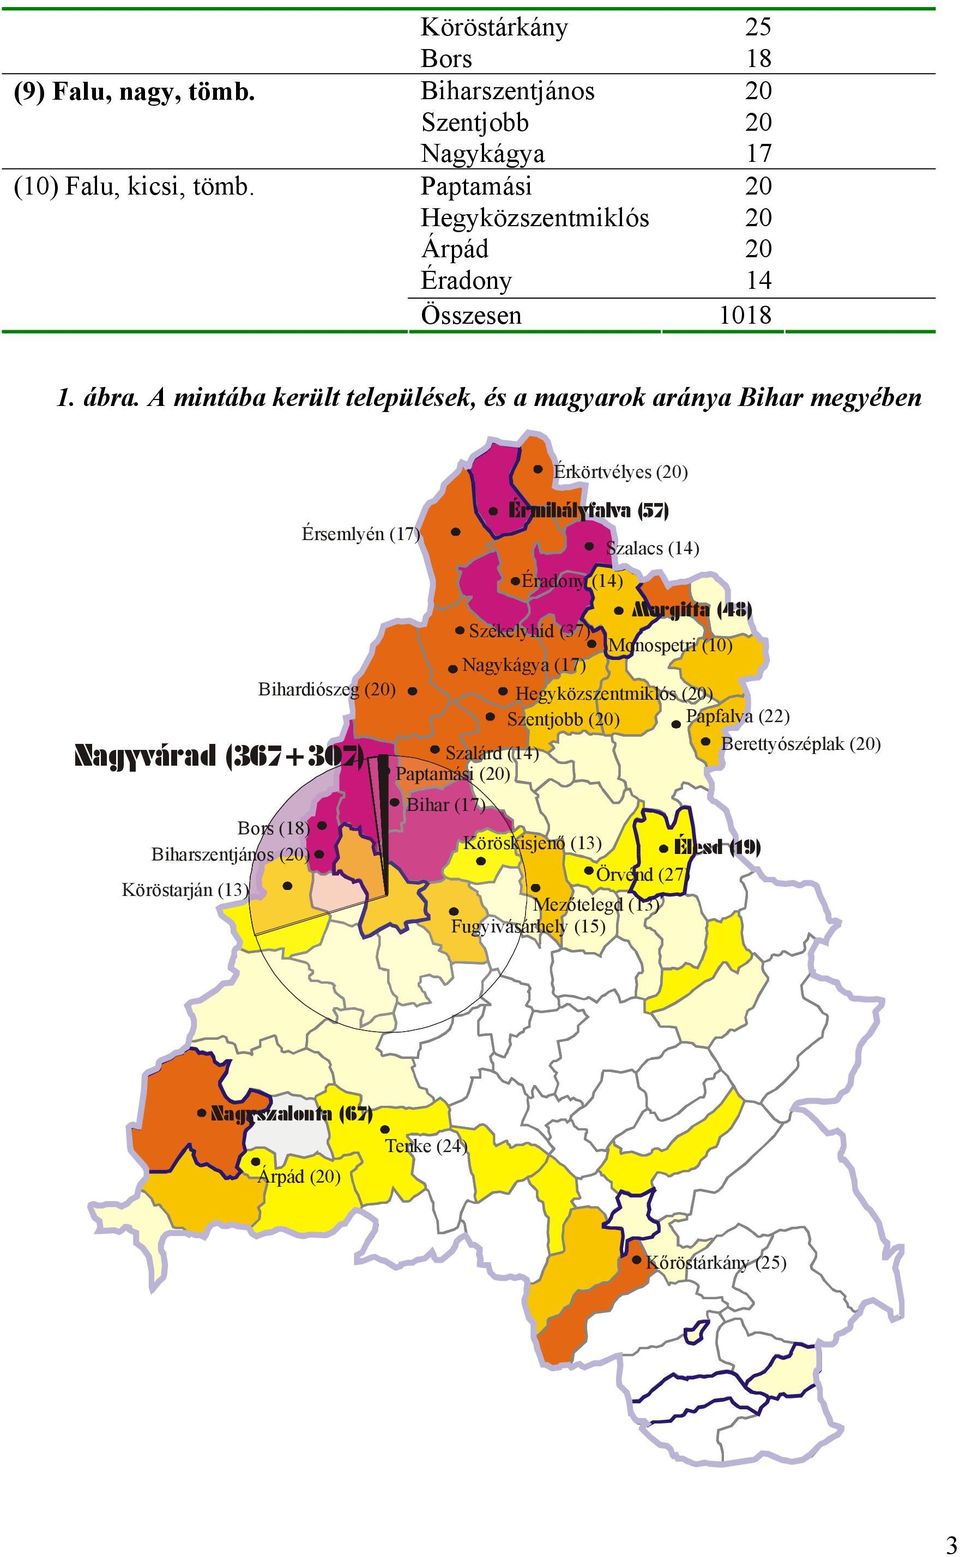 A mintába került települések, és a magyarok aránya Bihar megyében Érkörtvélyes (20) Bors (18) Biharszentjános (20) Köröstarján (13) Érsemlyén (17) Nagyvárad (367+307) Szalacs